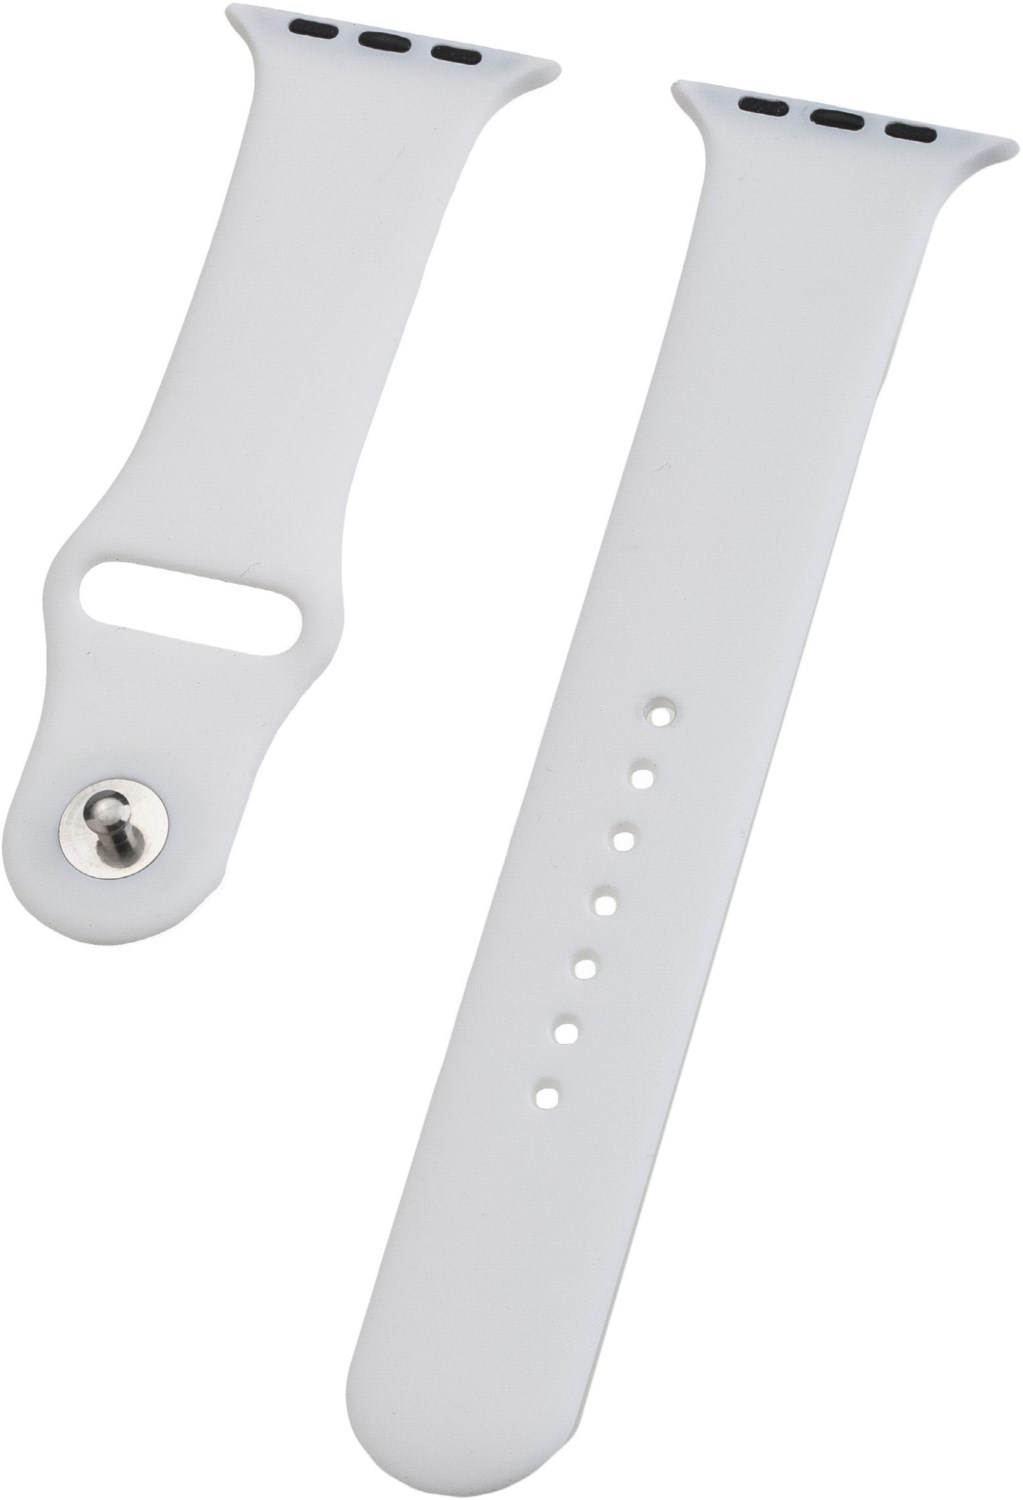 Peter Jäckel Watch Band Silikon für Apple Watch (44mm/42mm) weiß